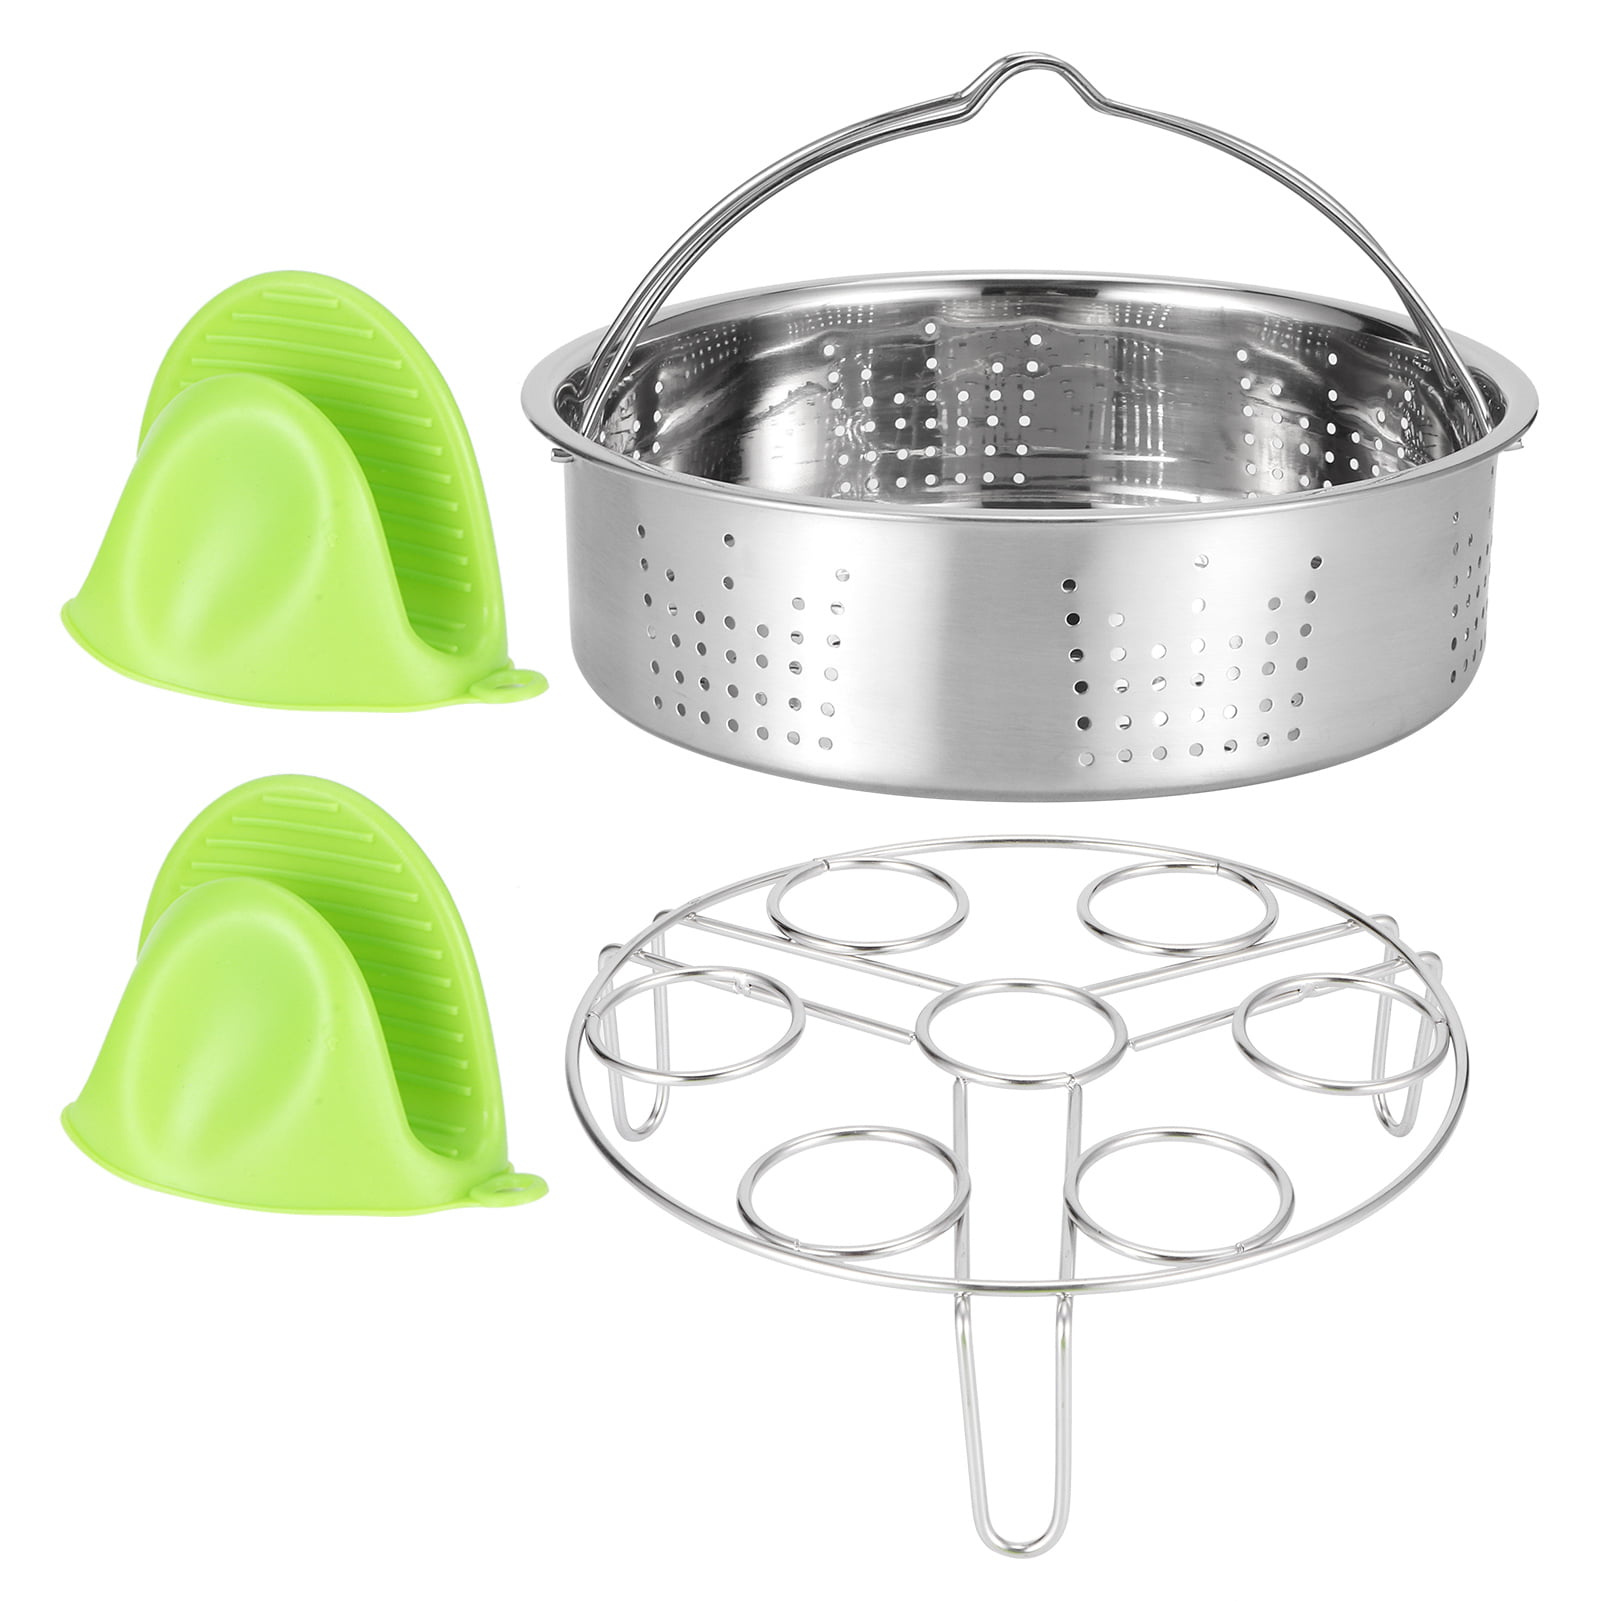 New Stainless Steel Egg Steamer Rack For Pressure Cooker Basket Kitchen Tool